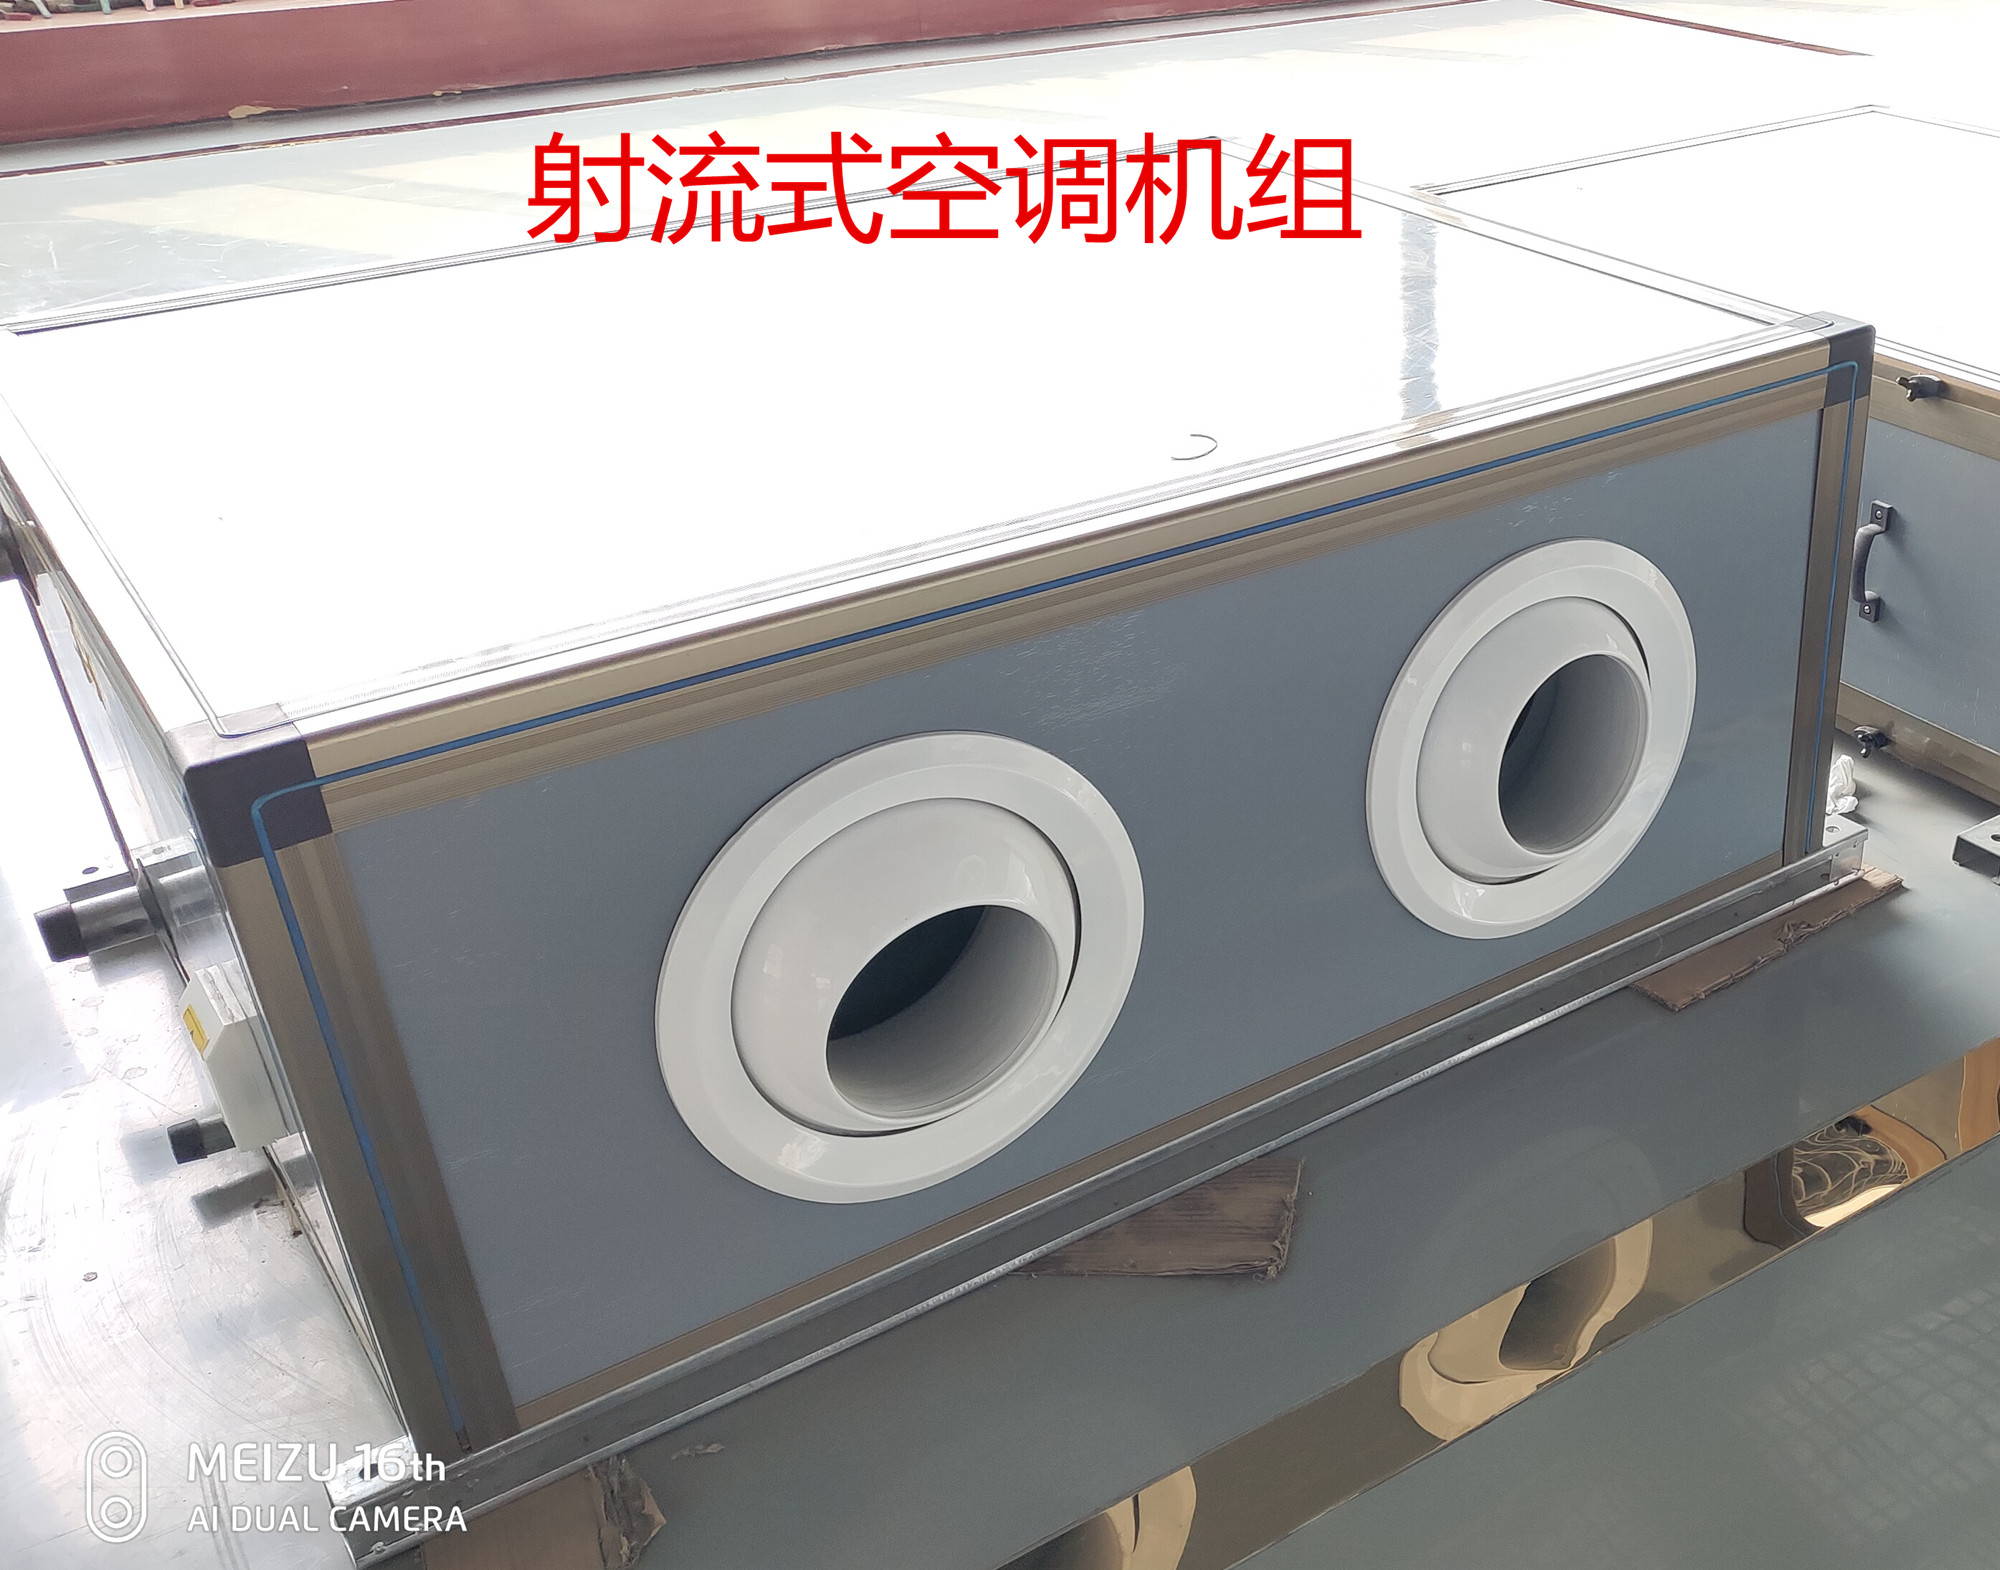 吊顶式空调机组  圳泽生产商  质保两年